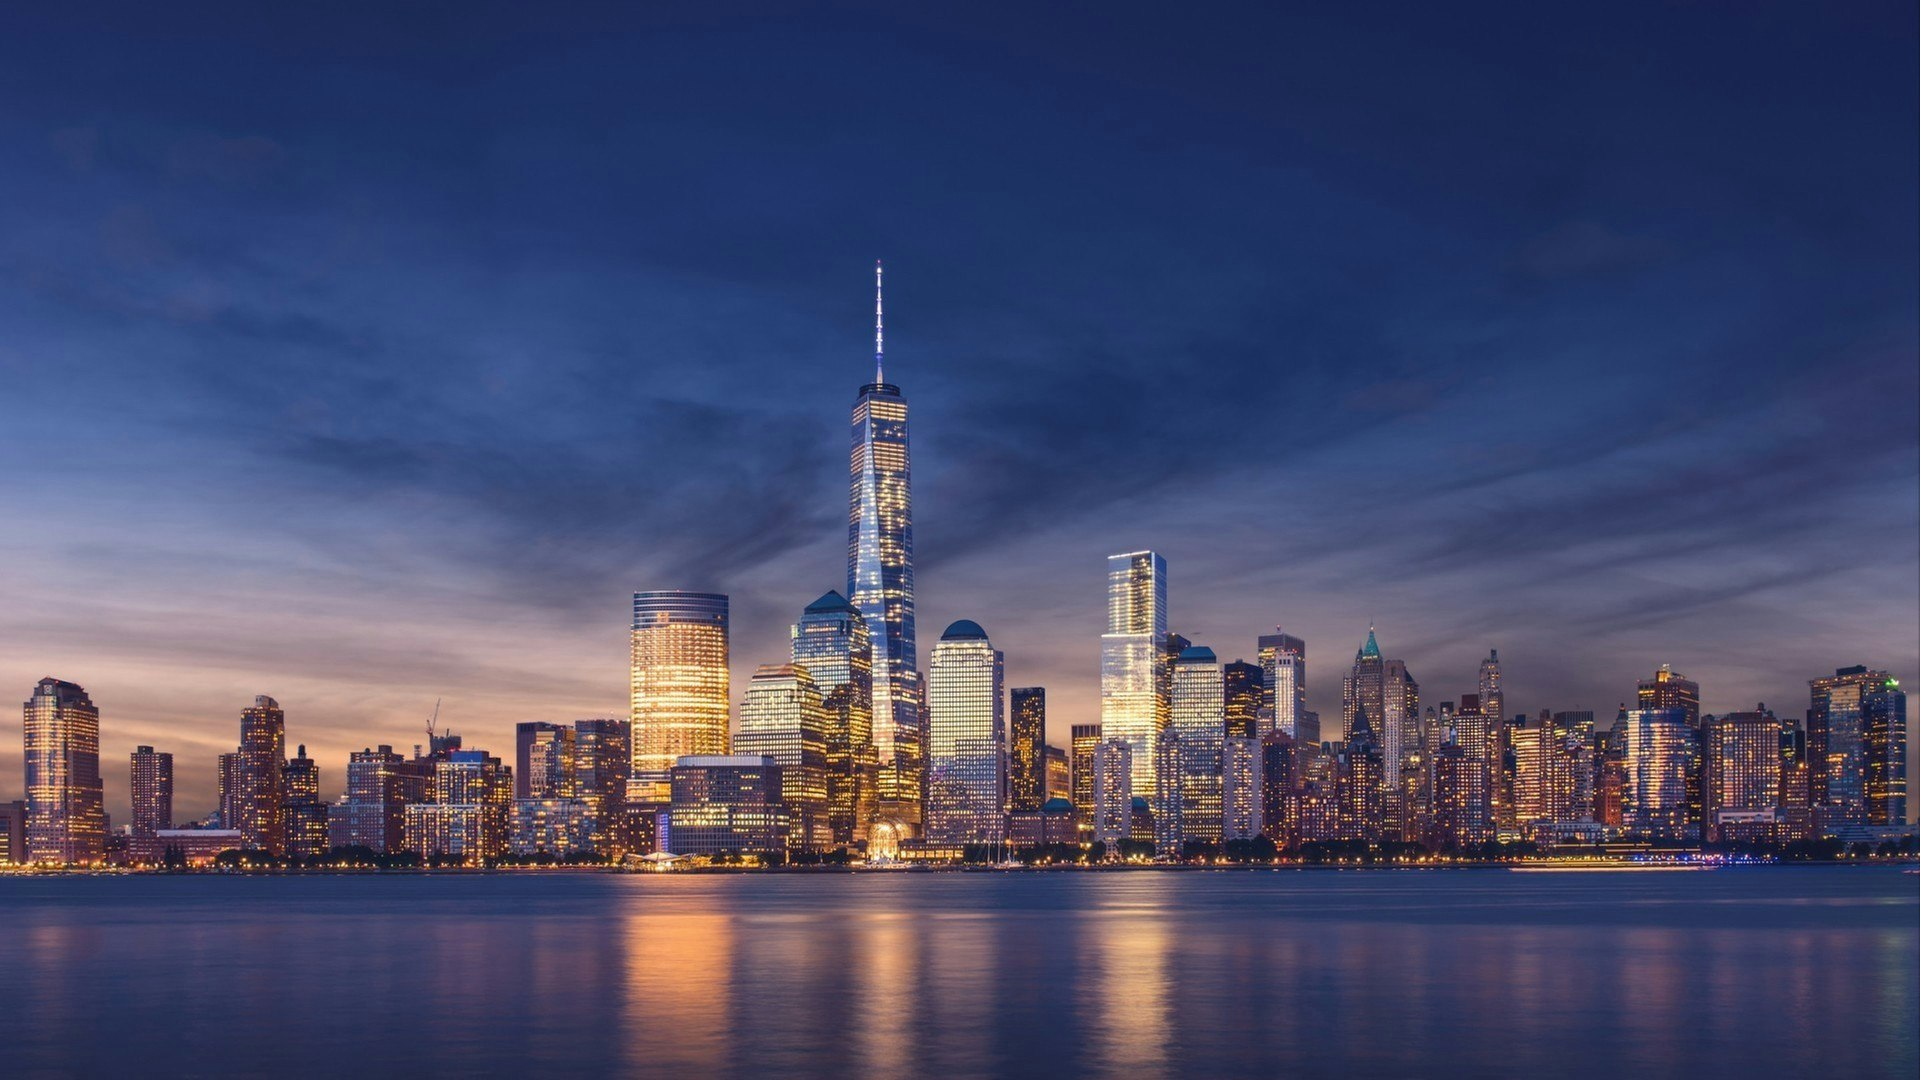 New York City - Manhattan after sunset